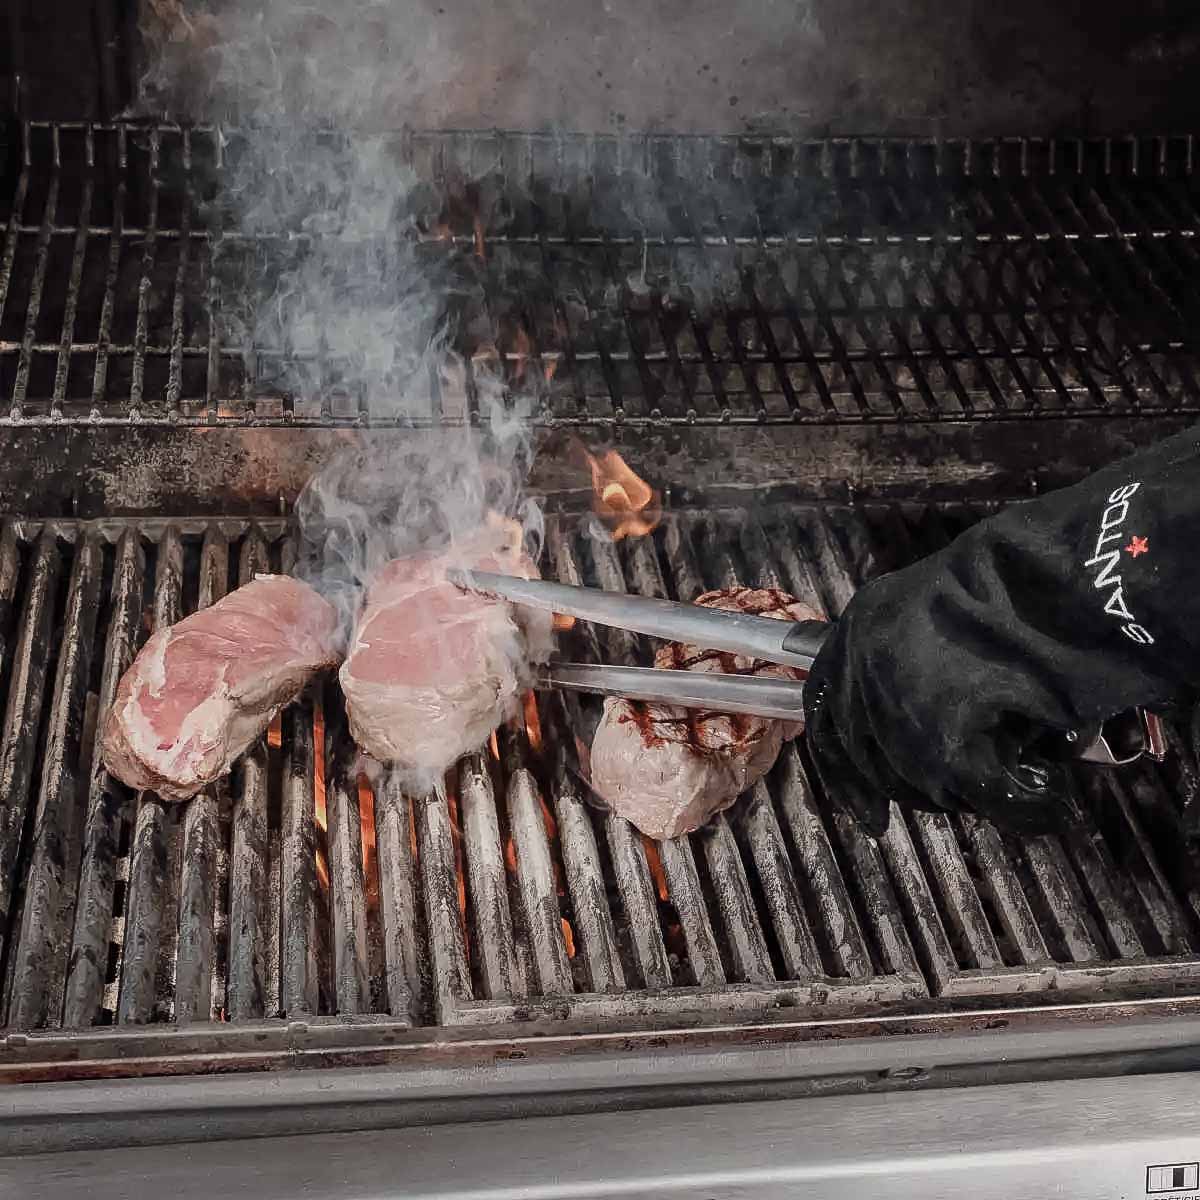 SANTOS 3-teiliges BBQ-Grillbesteck